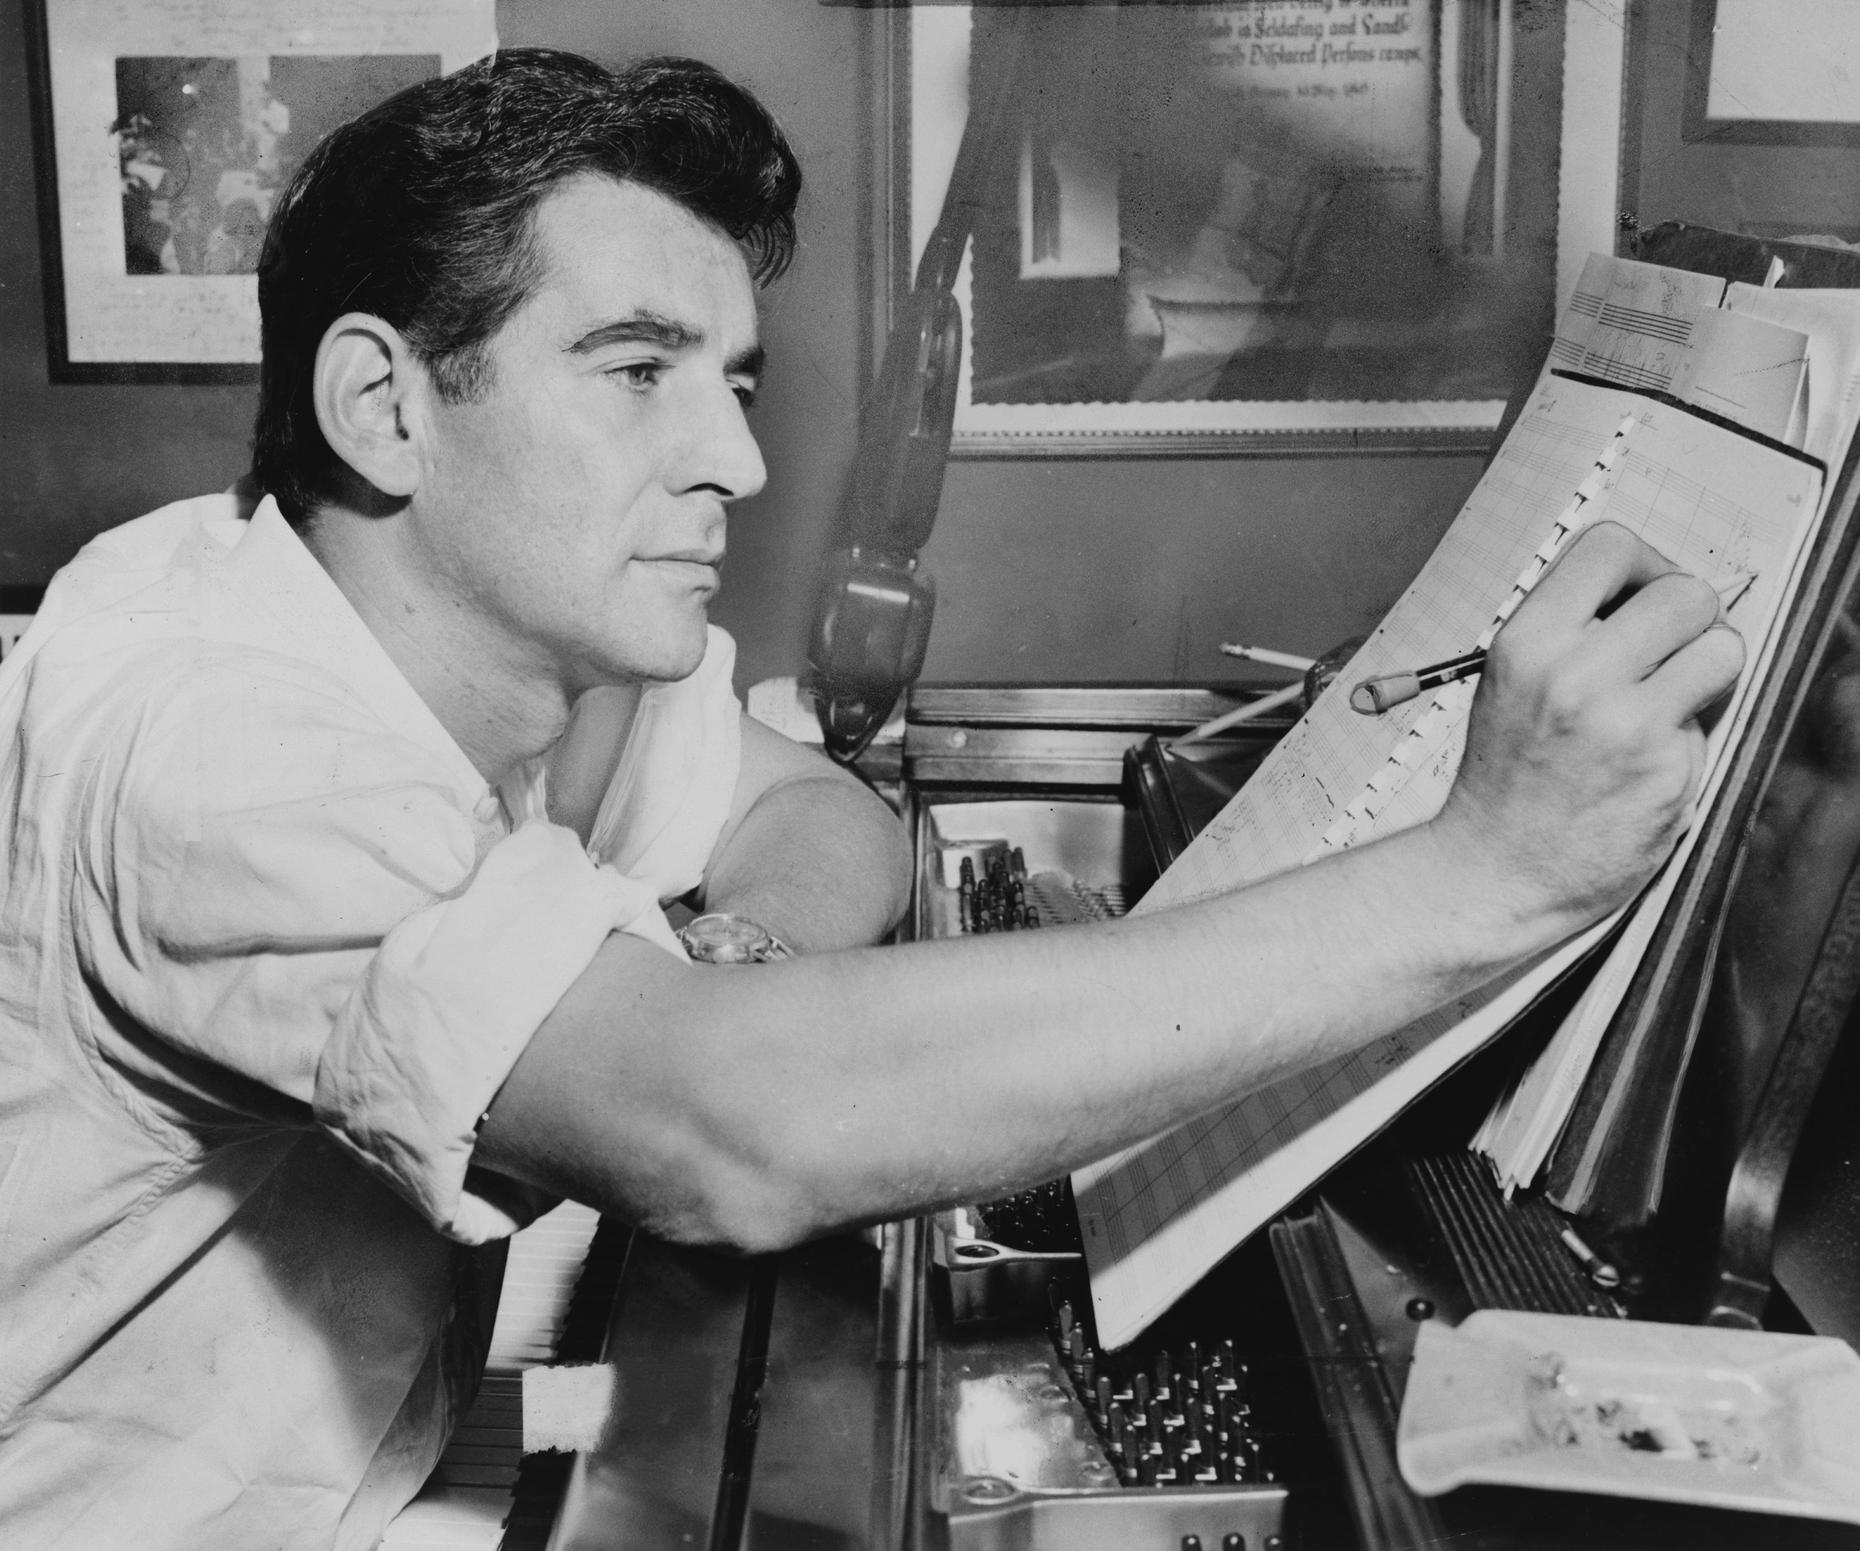 Leonard Bernstein's Carnegie Hall Debut